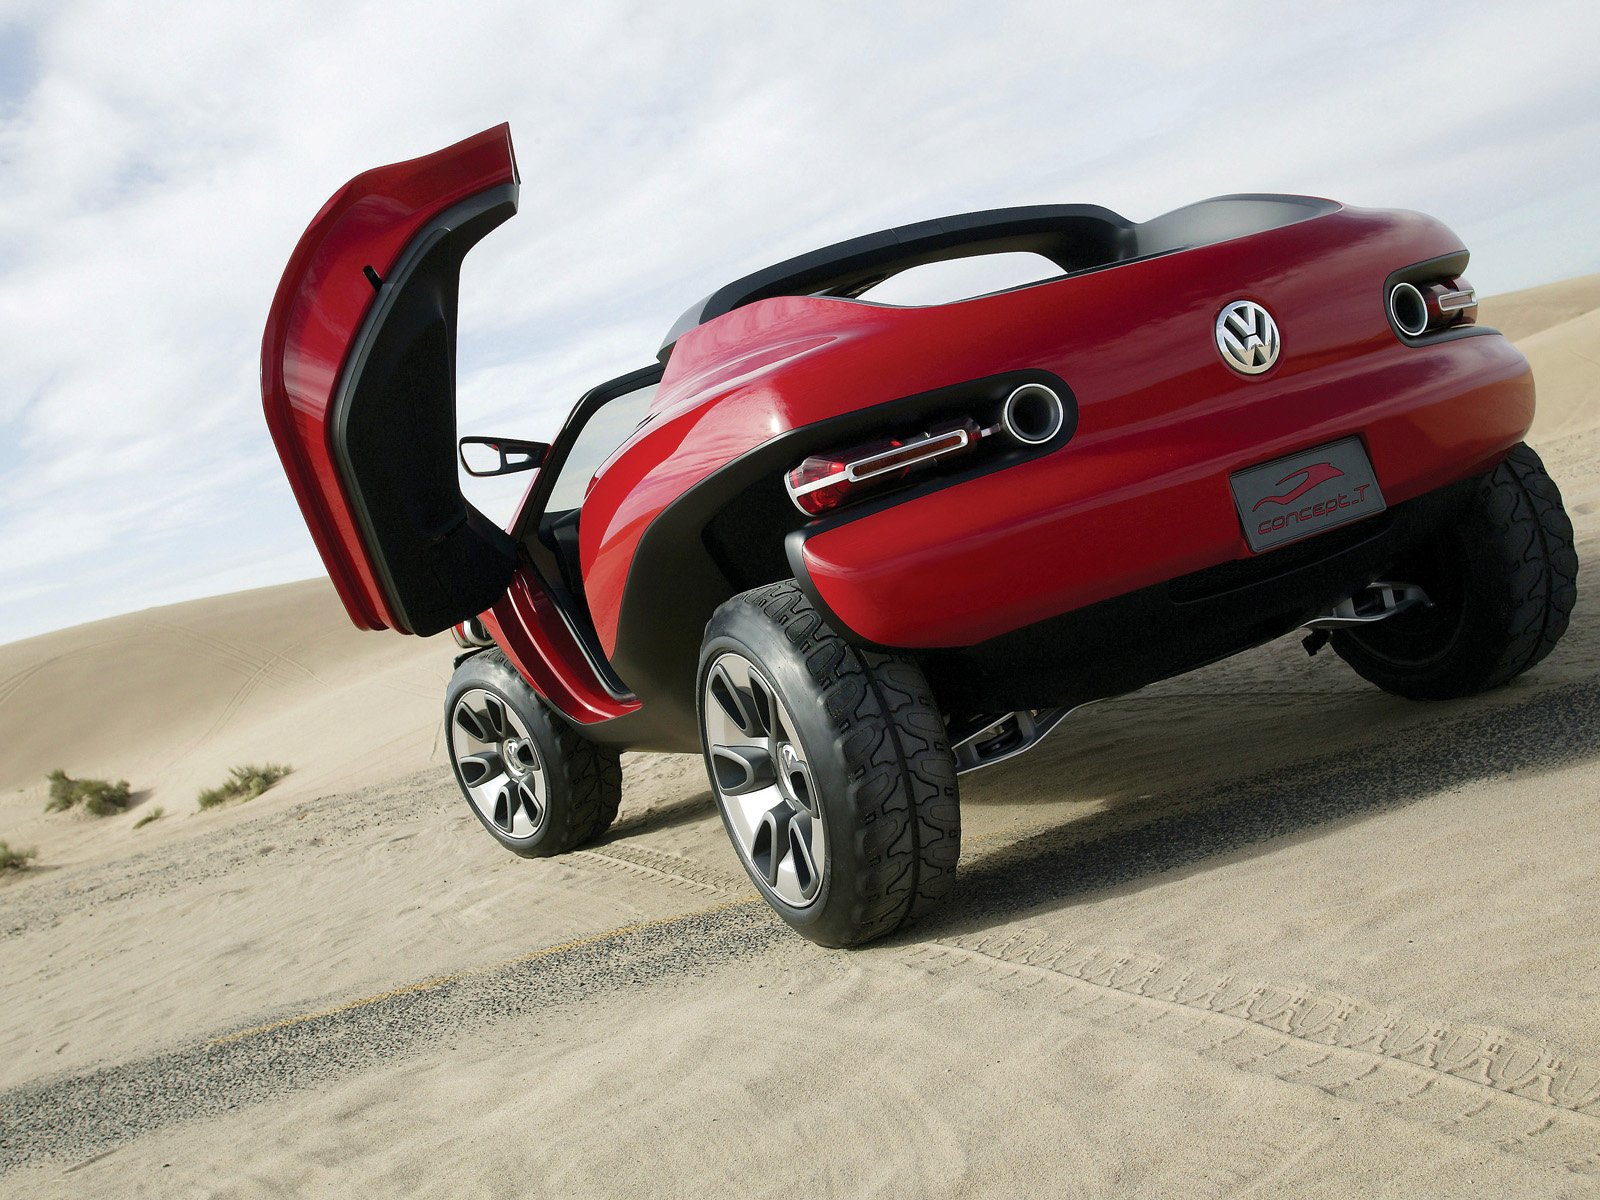 Volkswagen Concept A Wallpapers